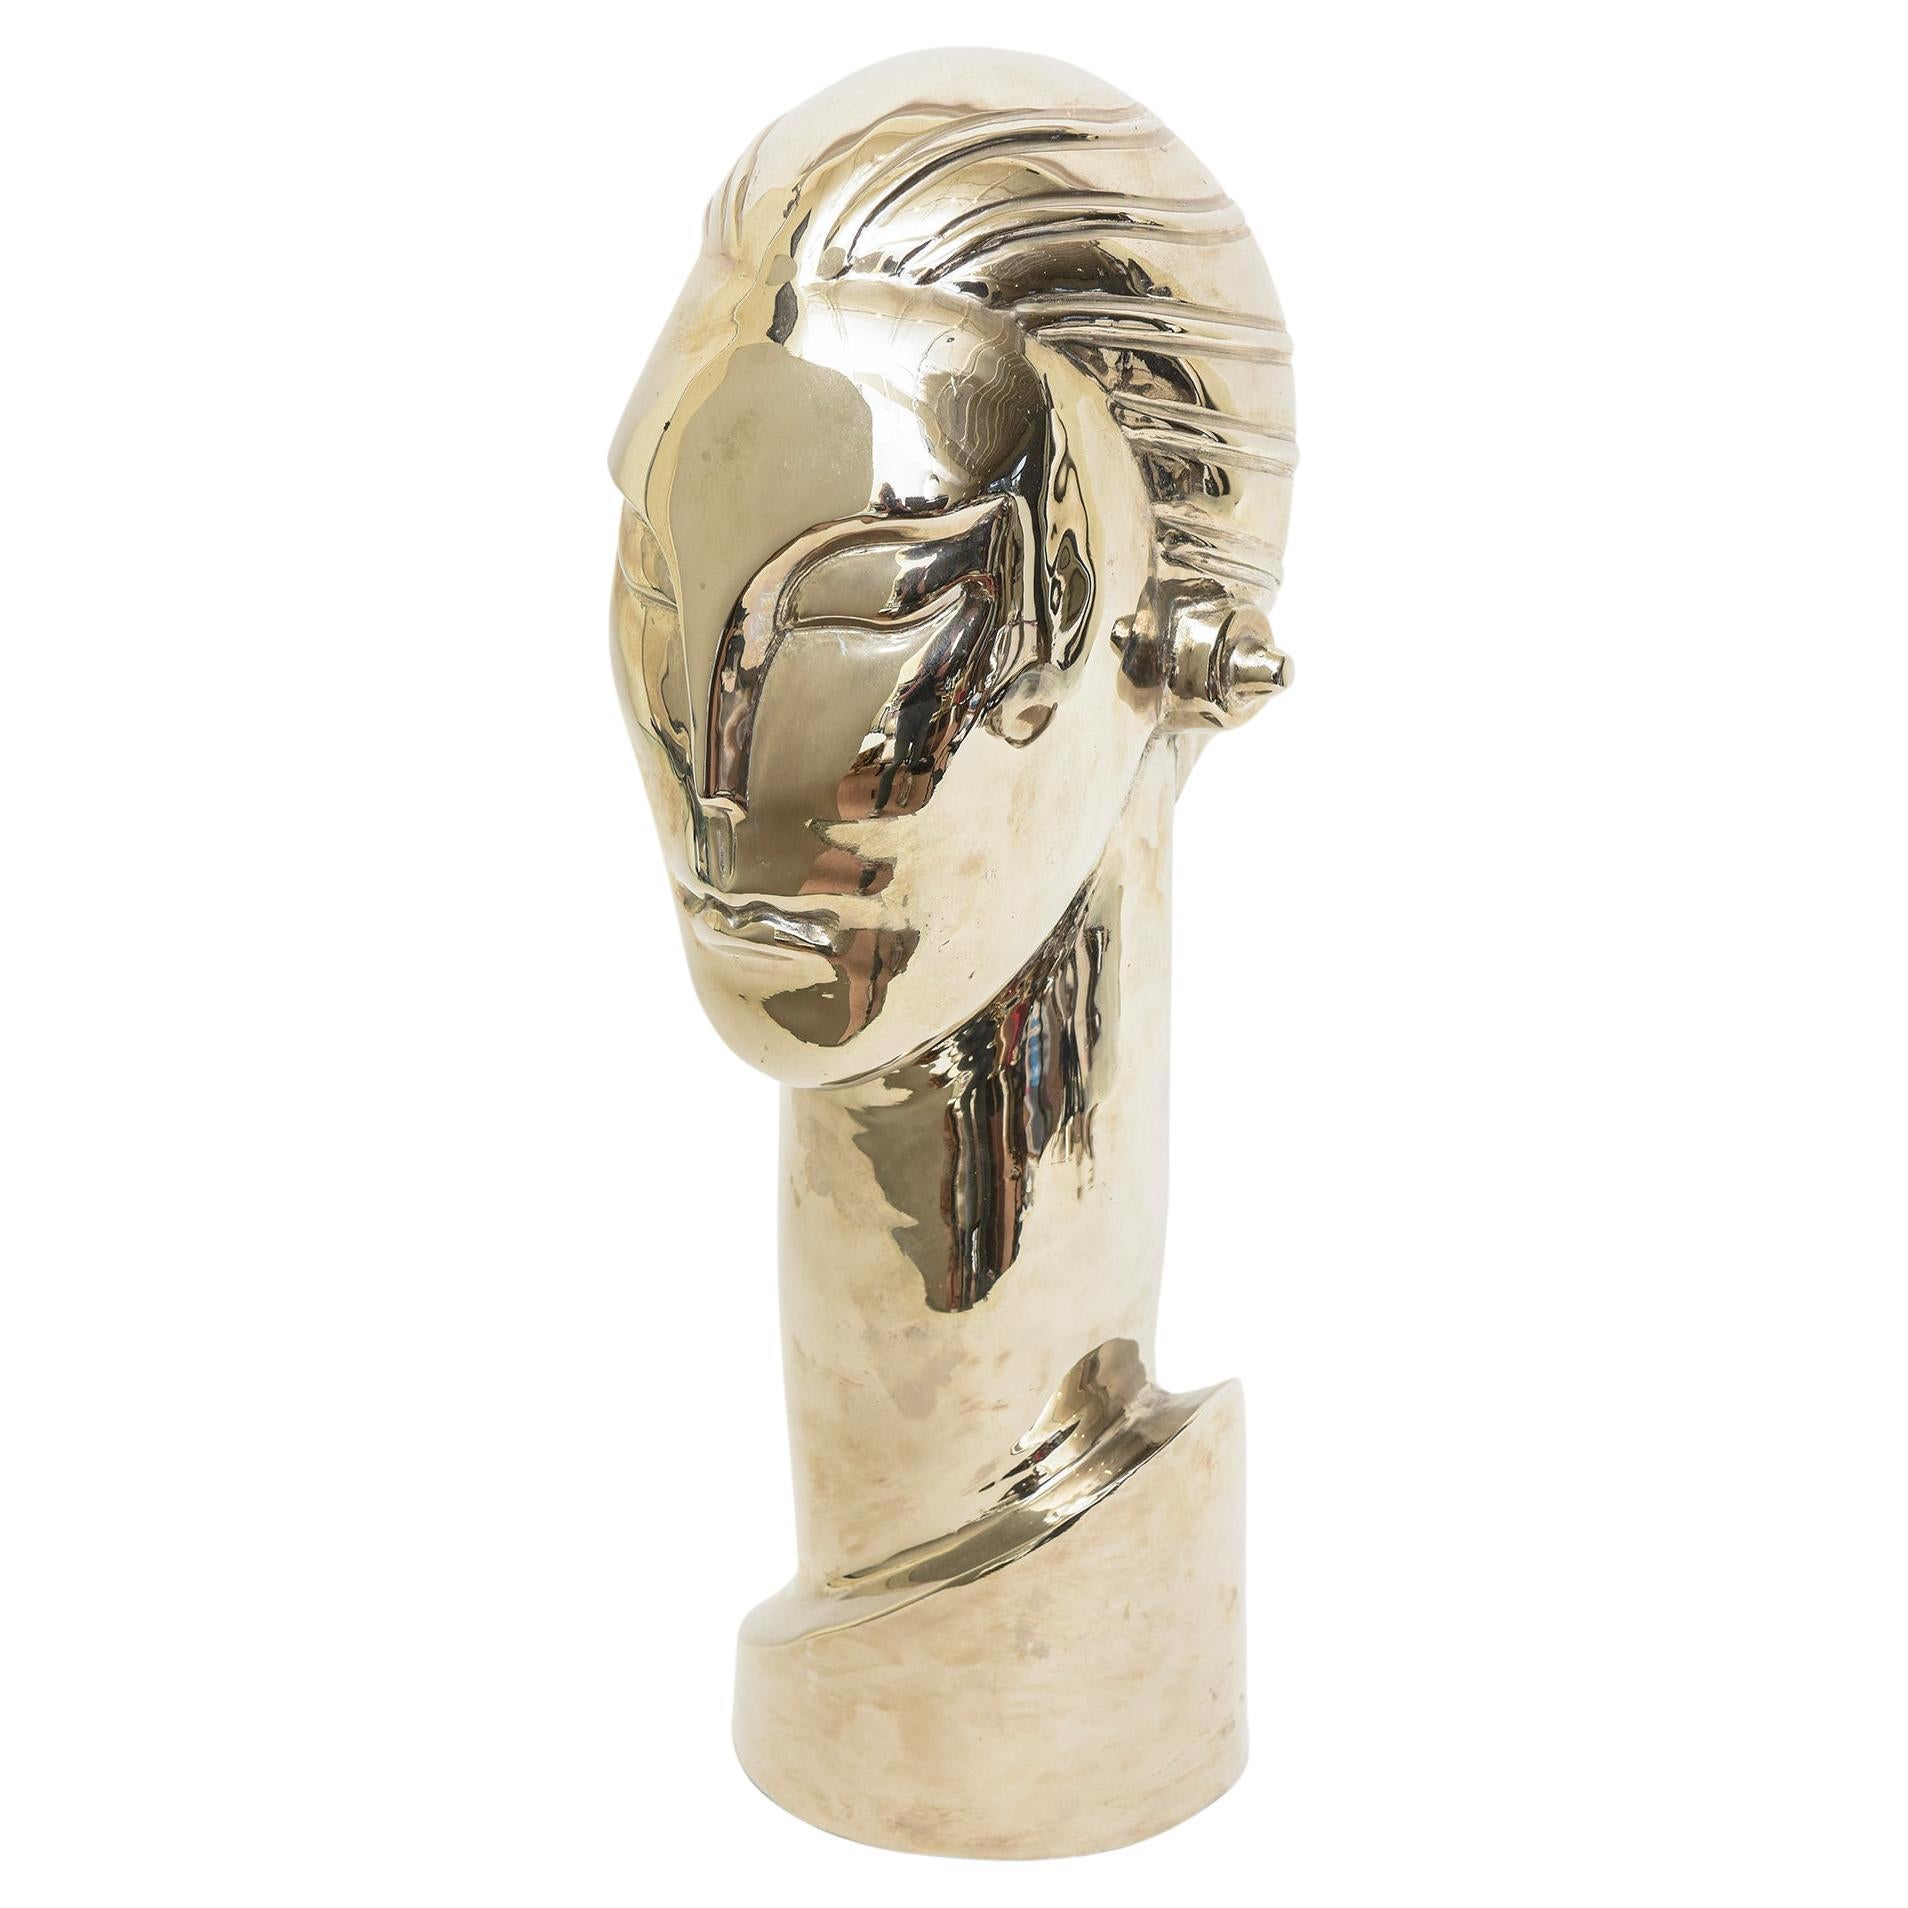 Figurative Skulptur mit hohem Kopf aus Nickel und Silber über Messing, Art déco-Stil, stilisiert 